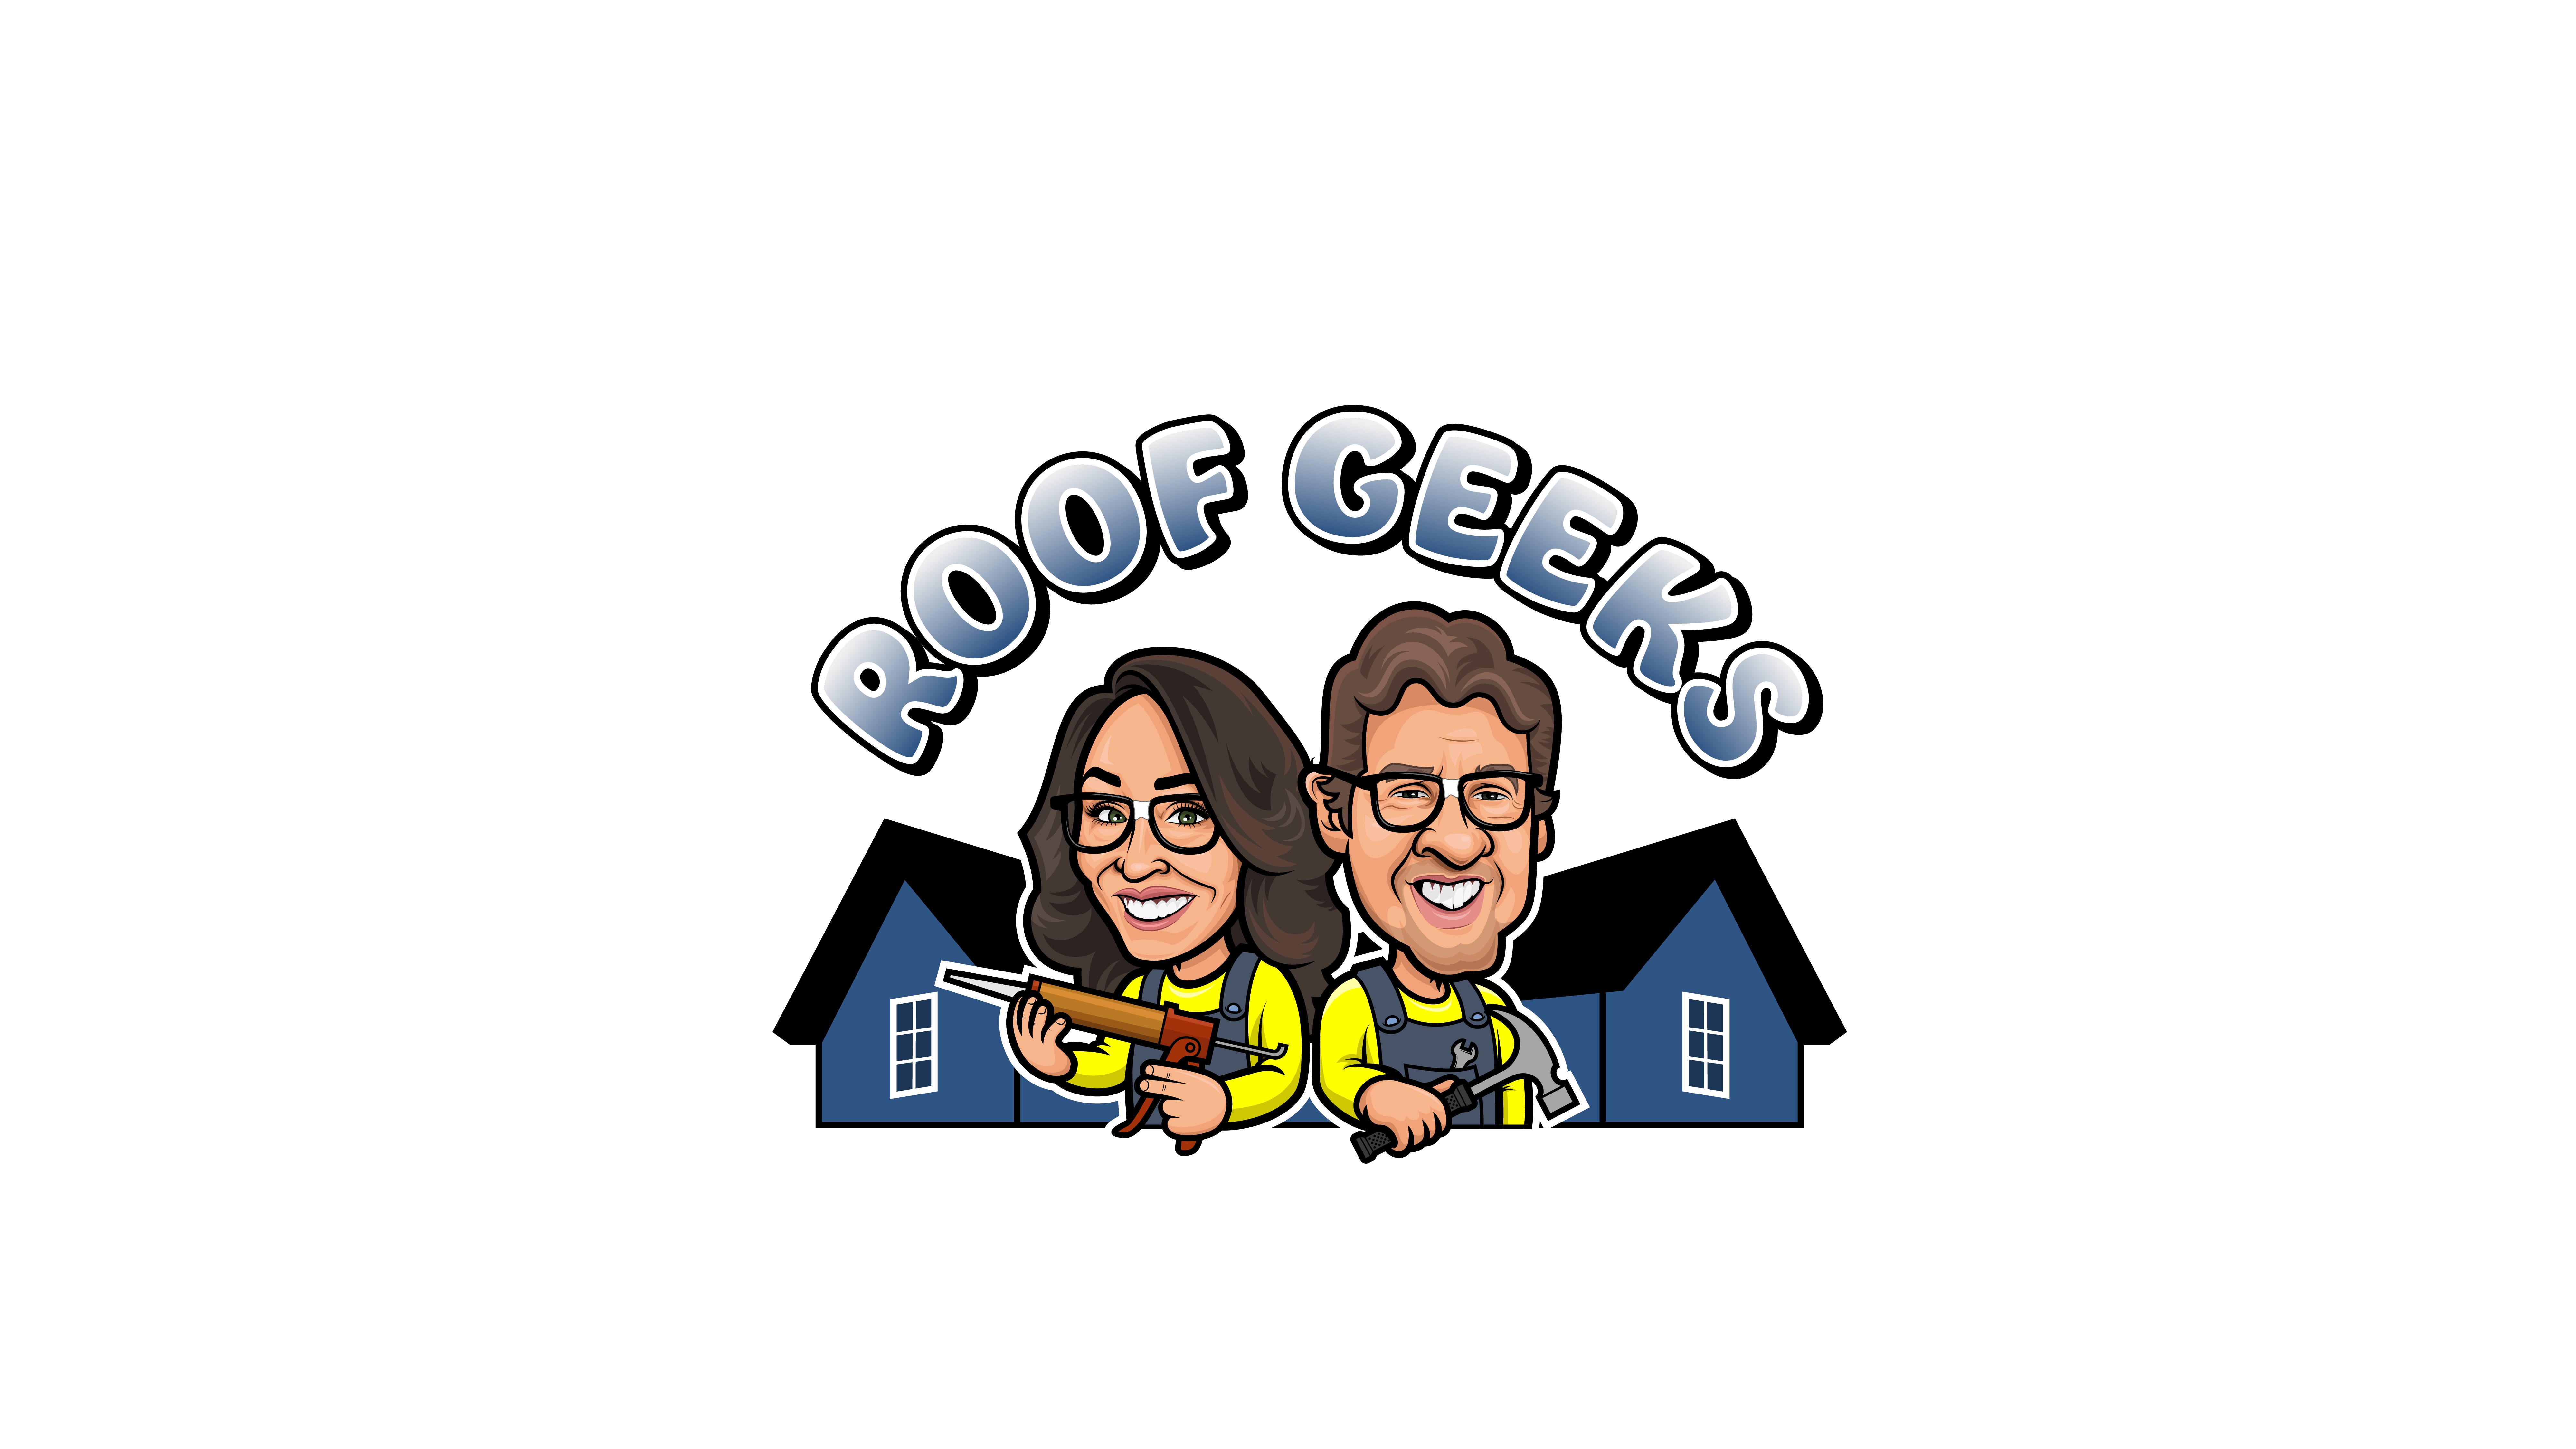 Roof Geeks